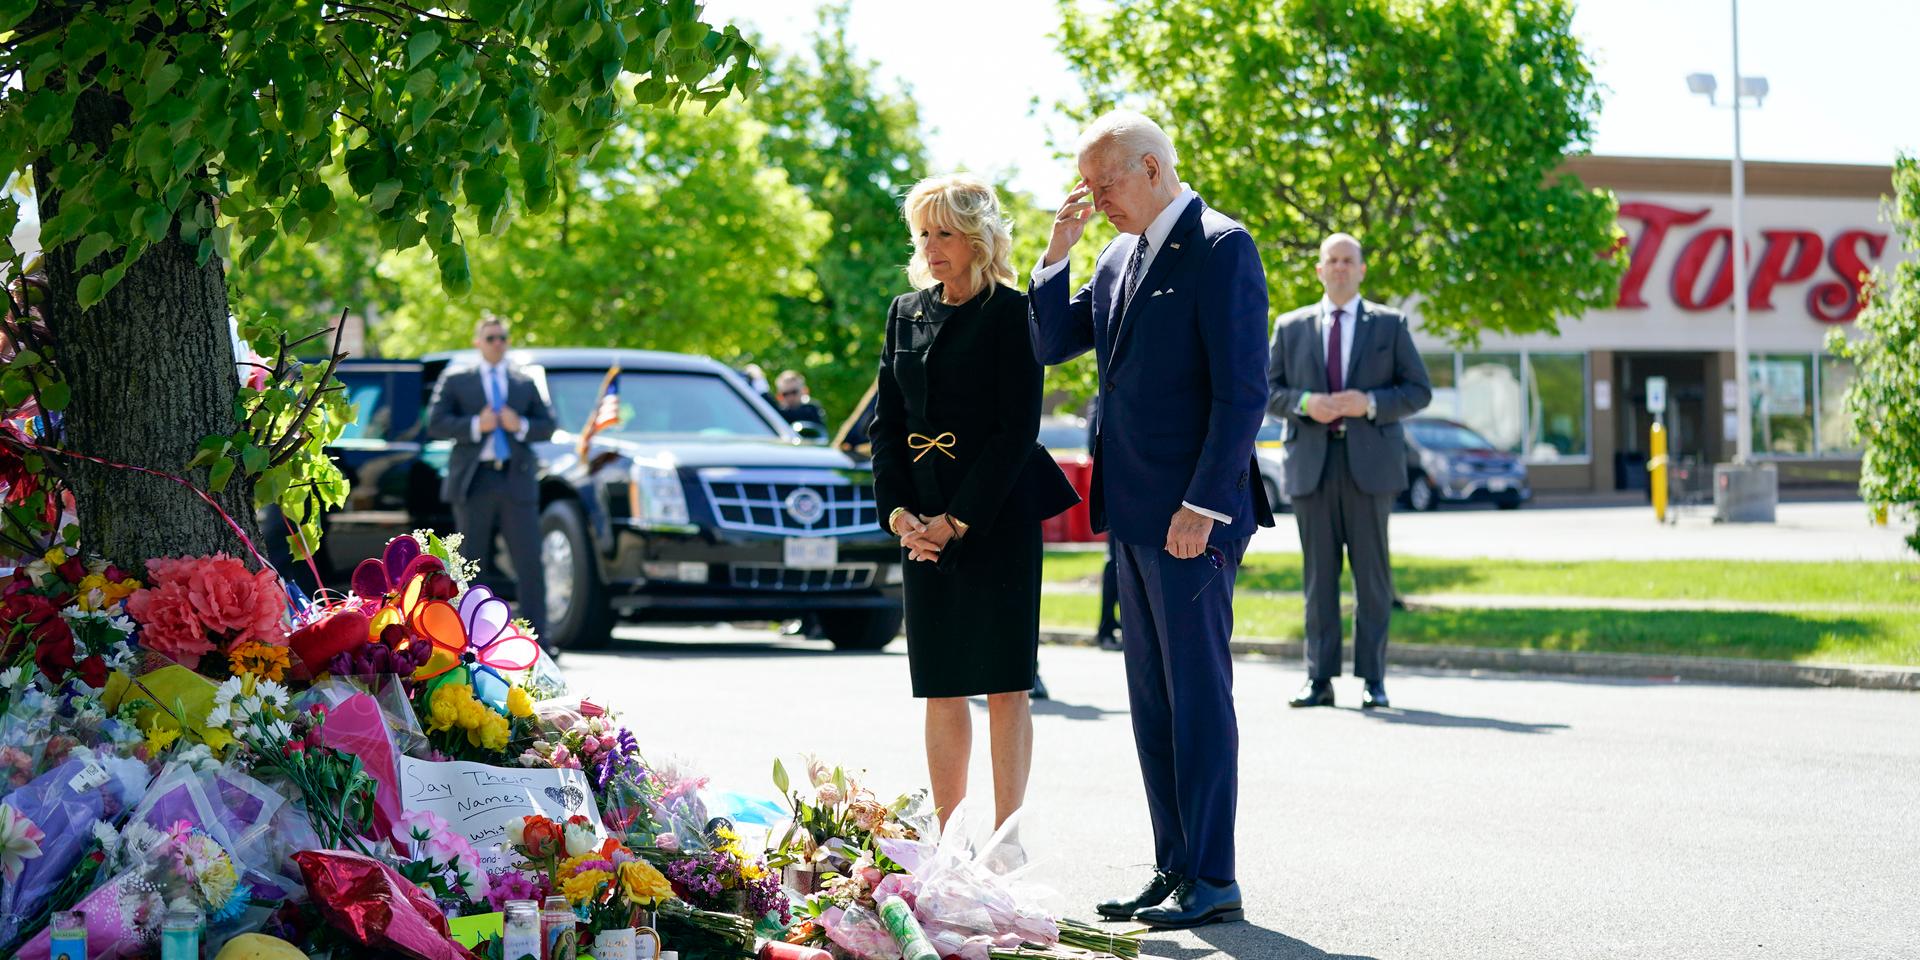 Det amerikanska presidentparet hedrar offren för masskjutningen i lördags i Buffalo då tio människor miste livet.